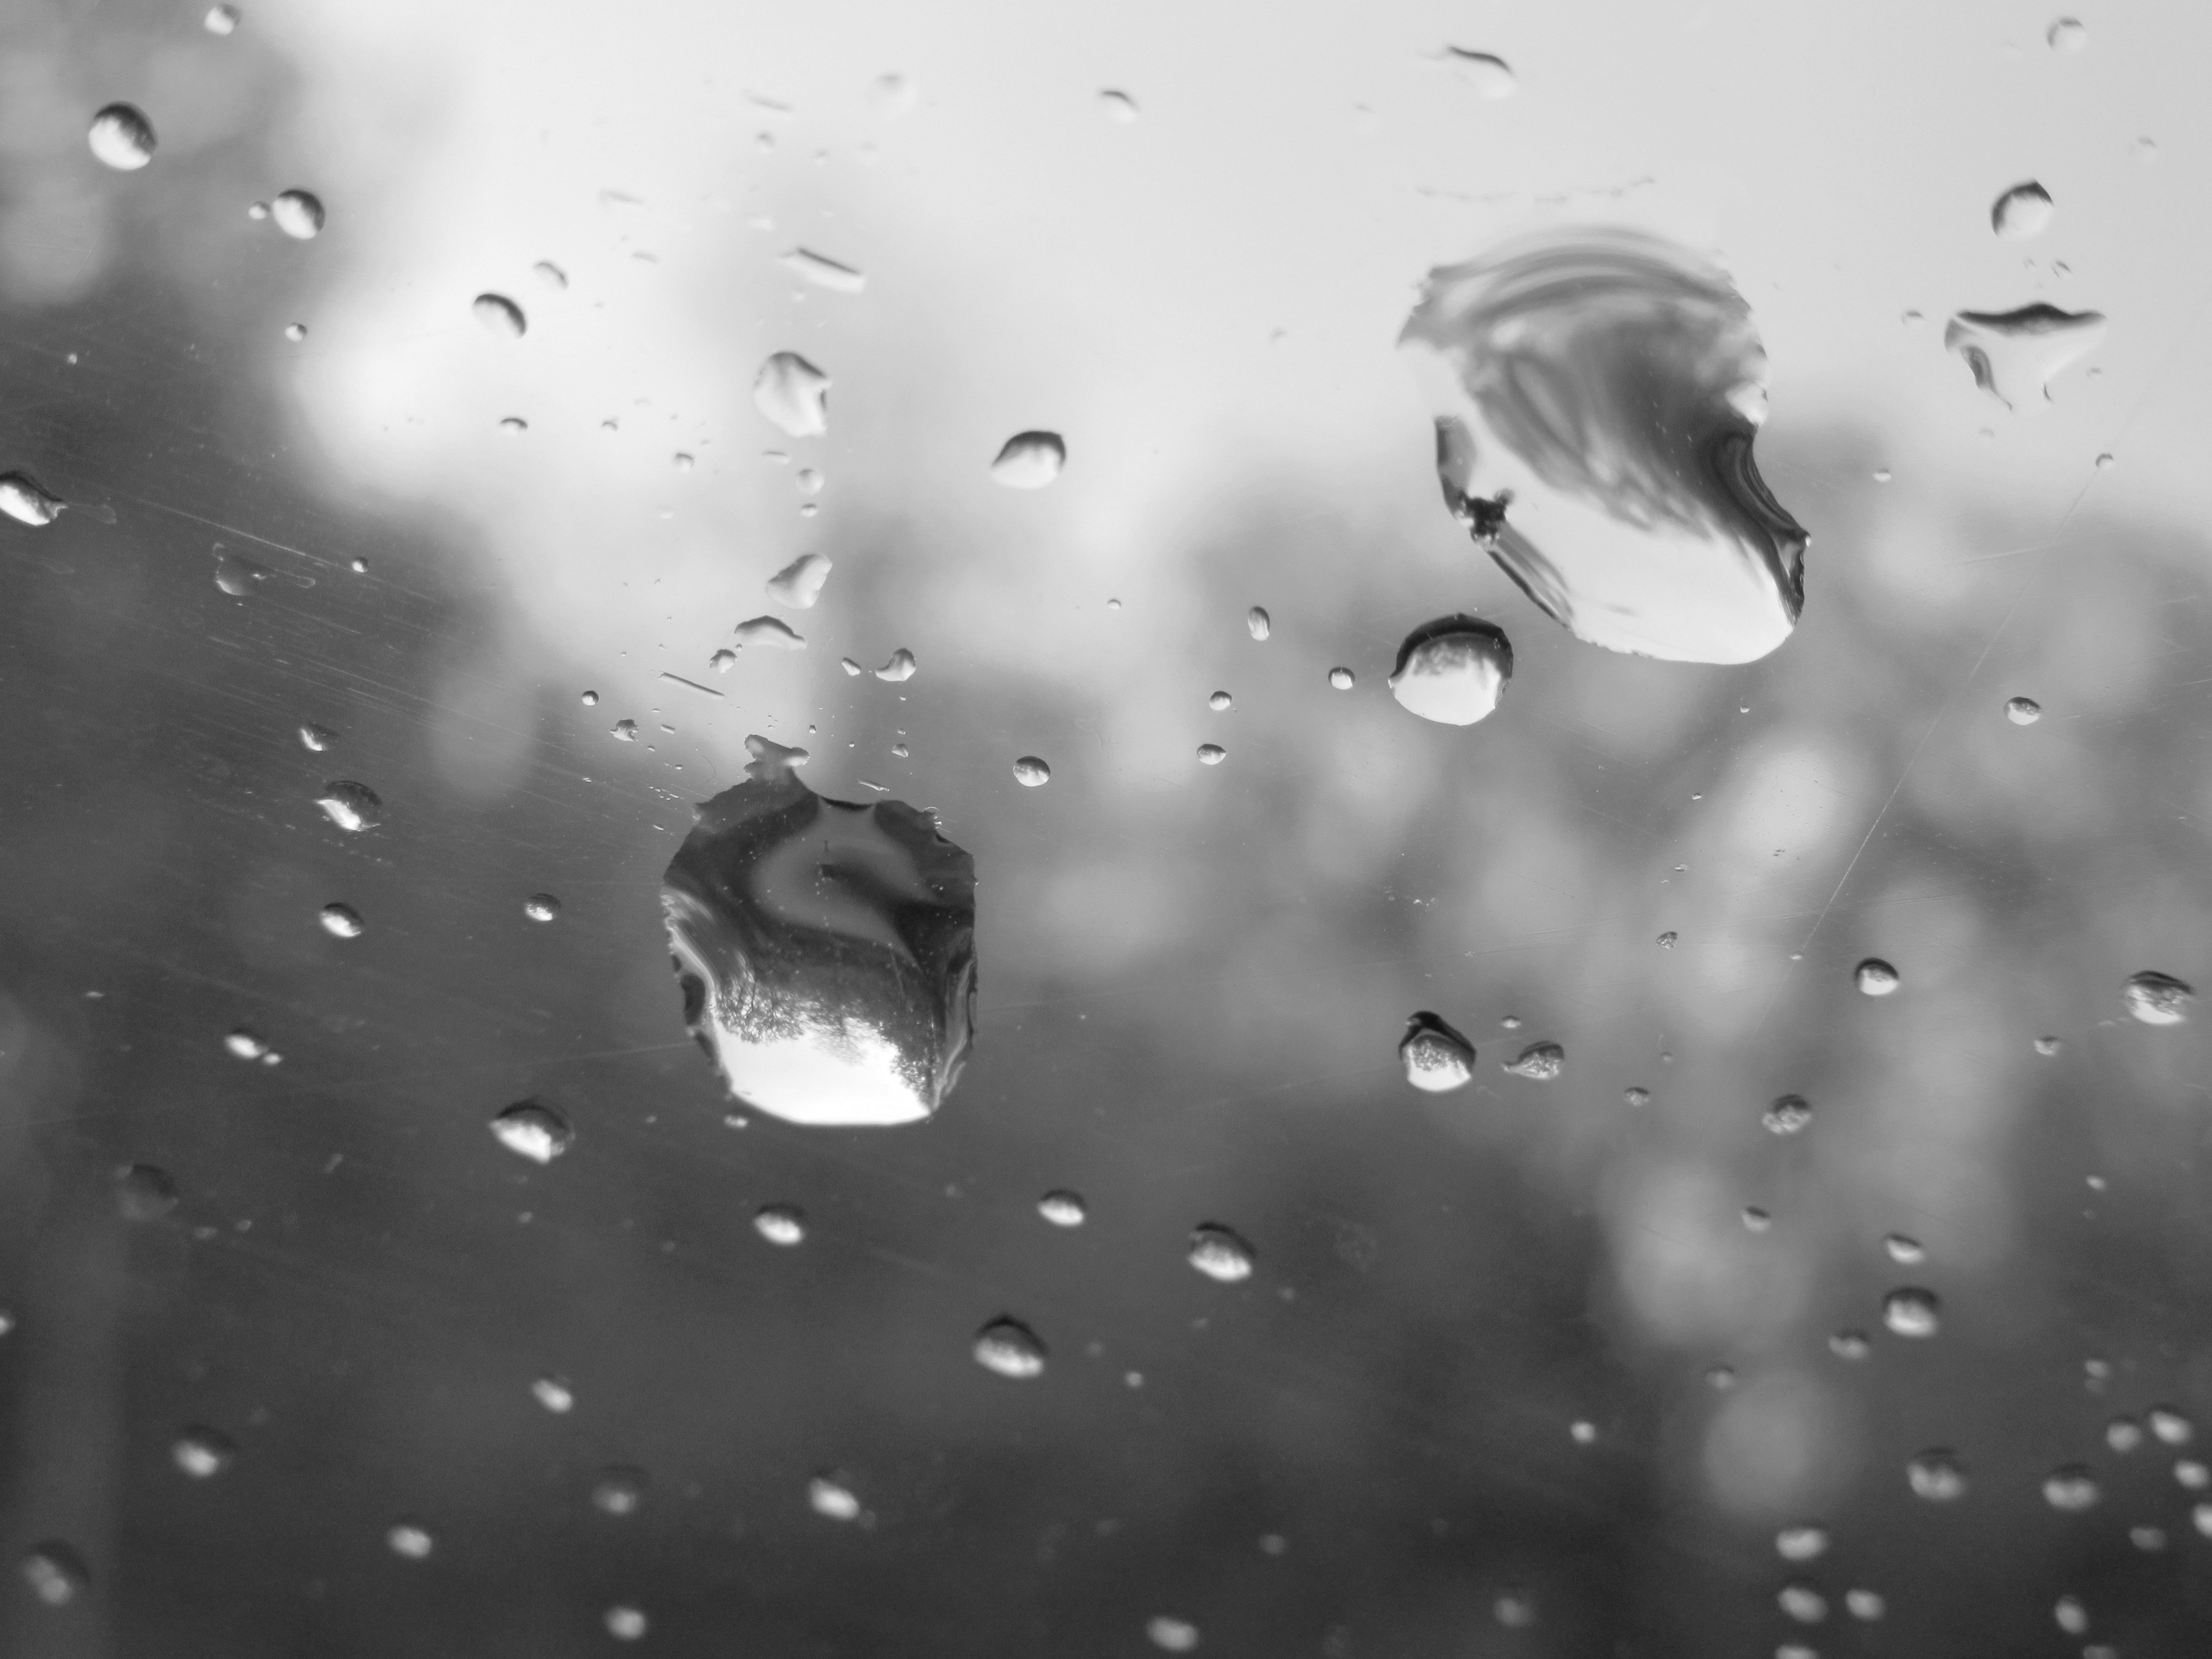 Вечер 2 капли. Капли на стекле. Падающие капли воды. Капли дождя на стекле. Капли падают.